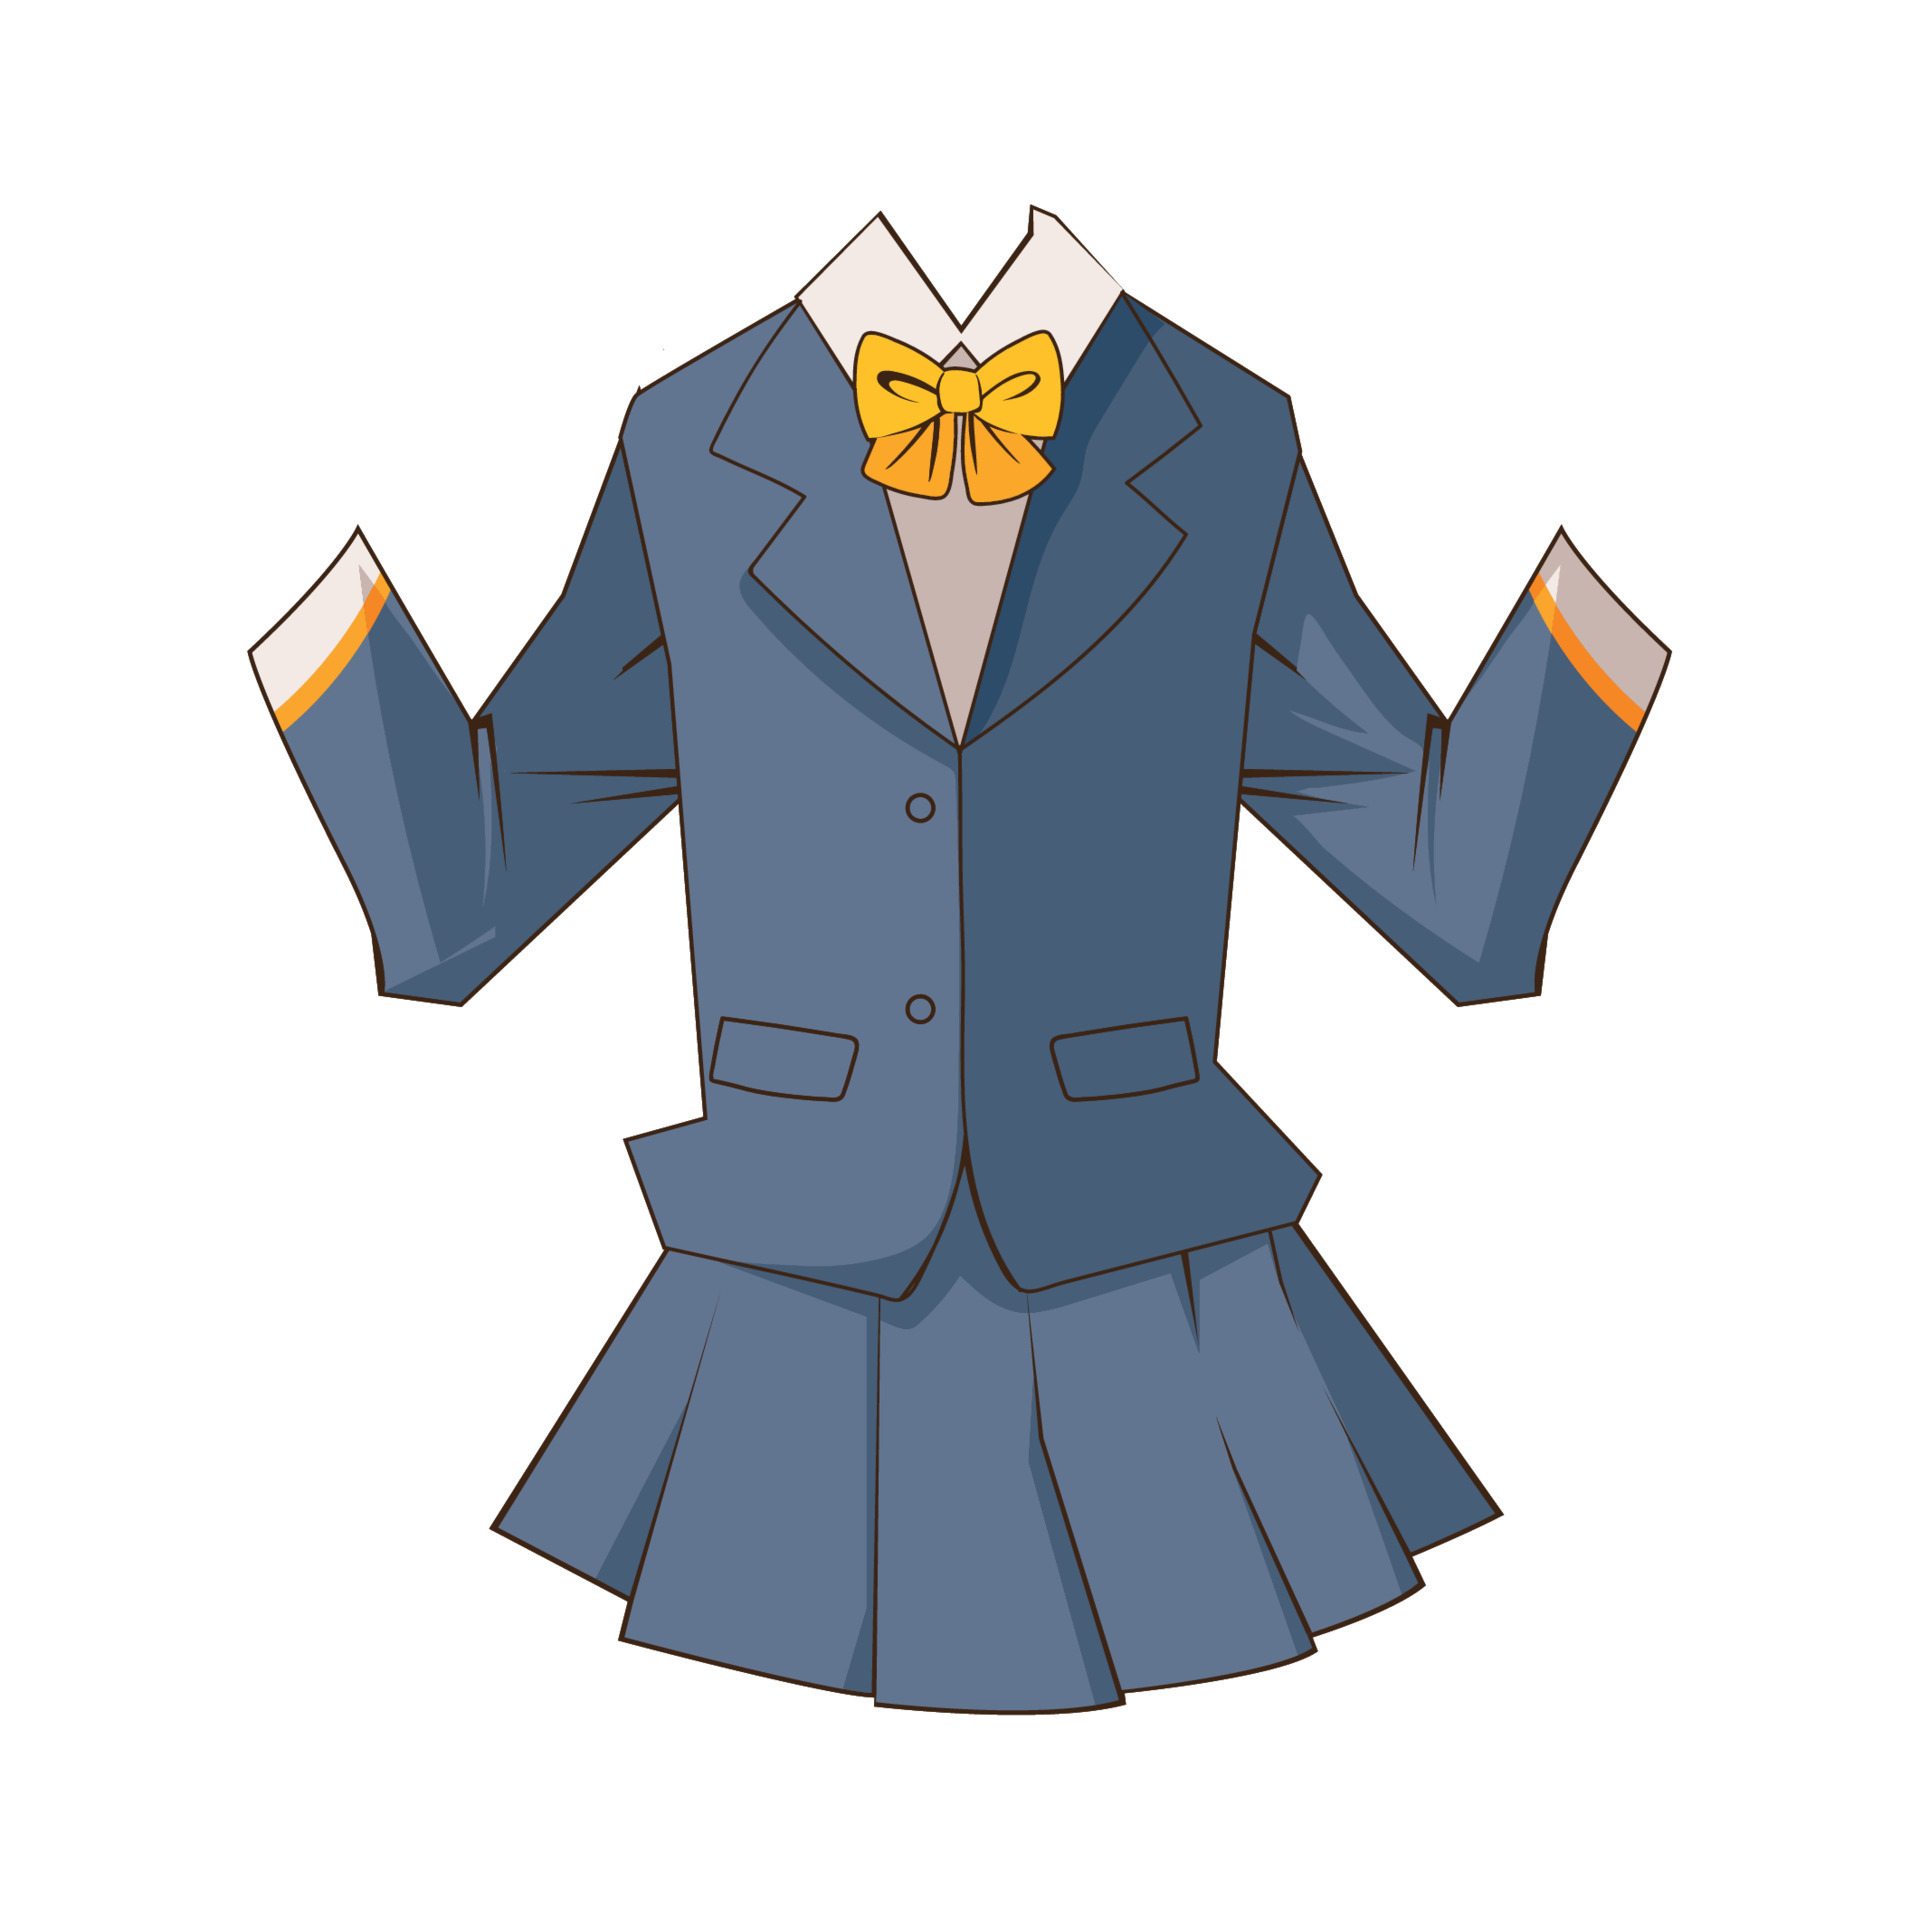 School uniforms in Japan - Wikipedia